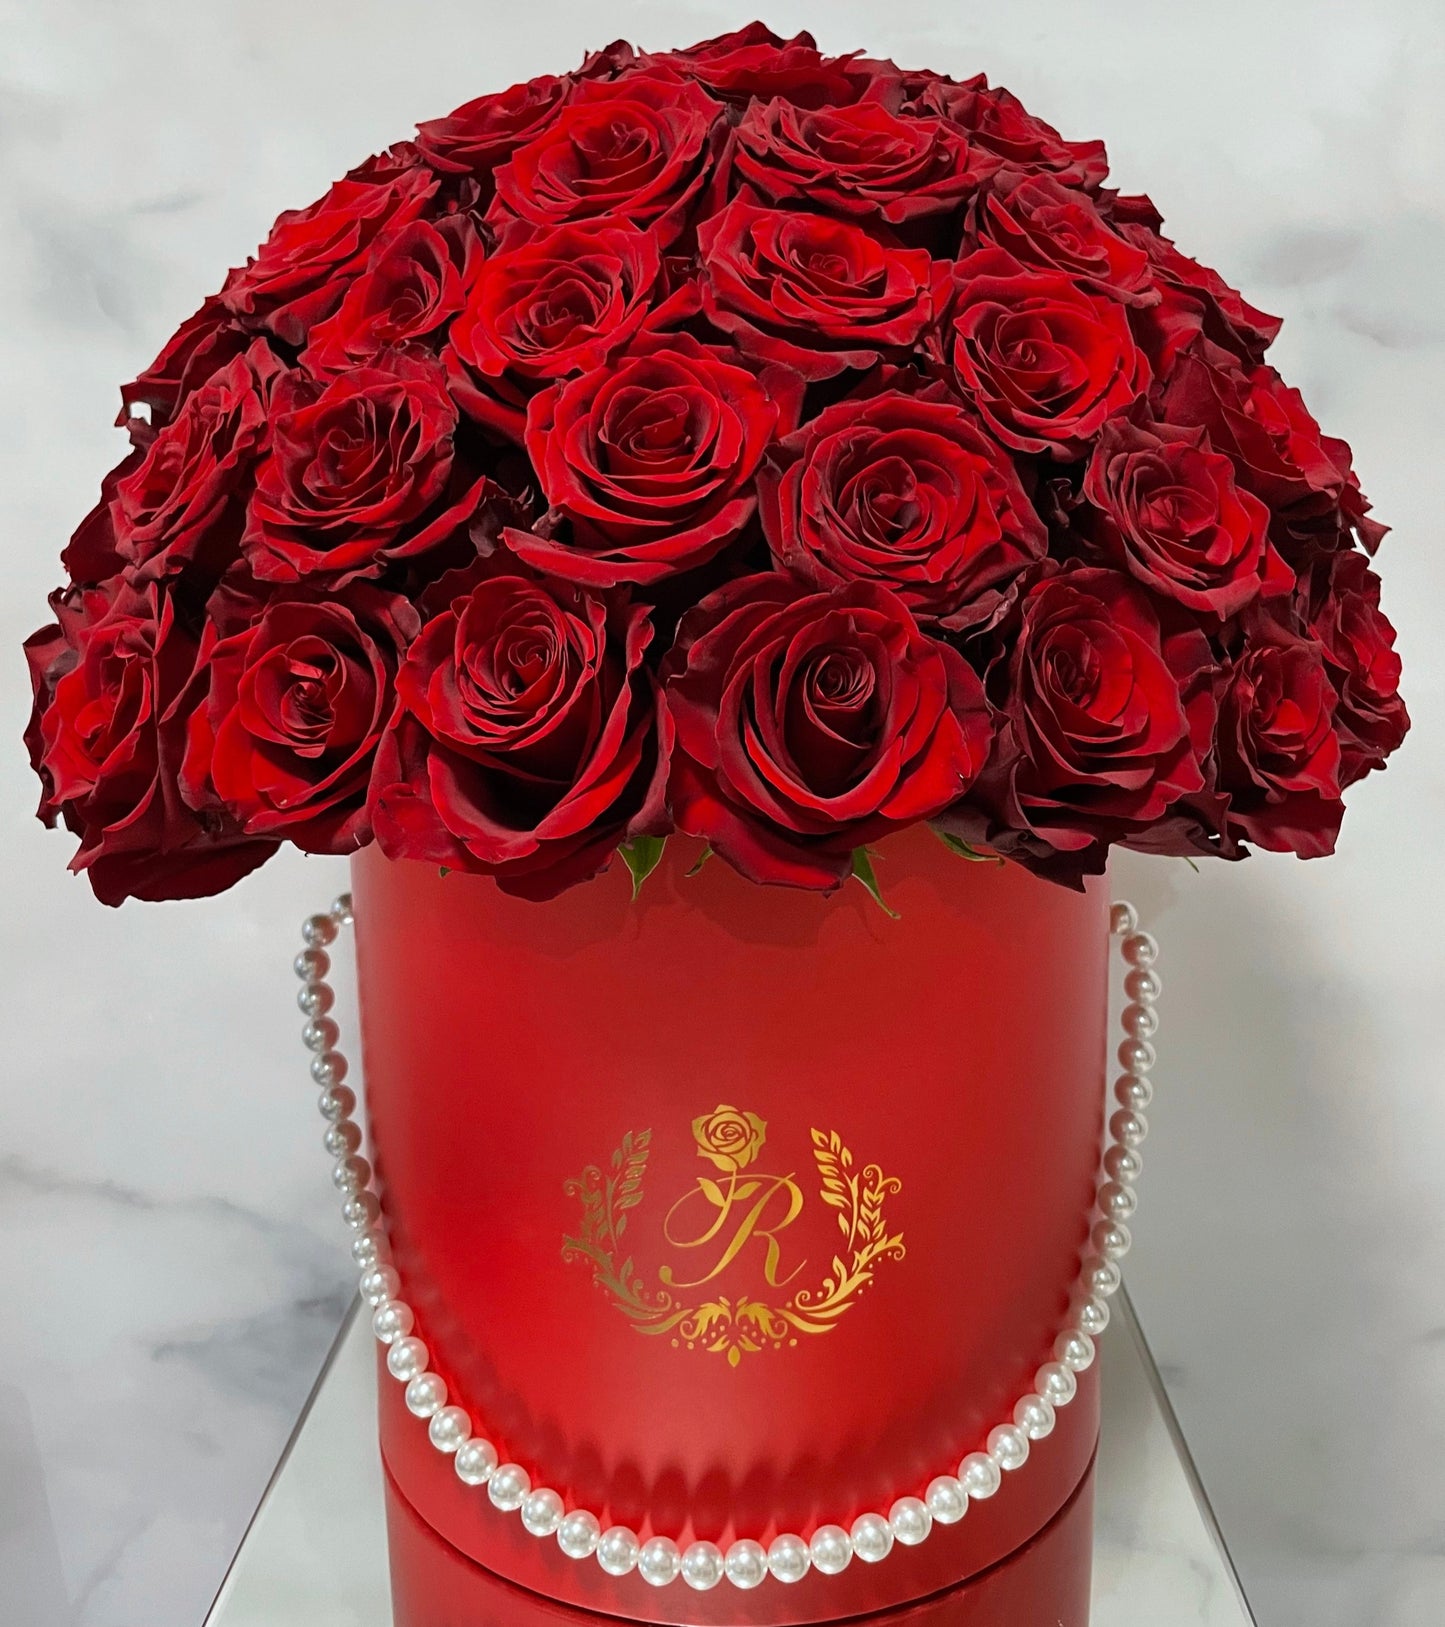 【RED BOX】プロポーズ用 赤バラ108本のドームフラワー